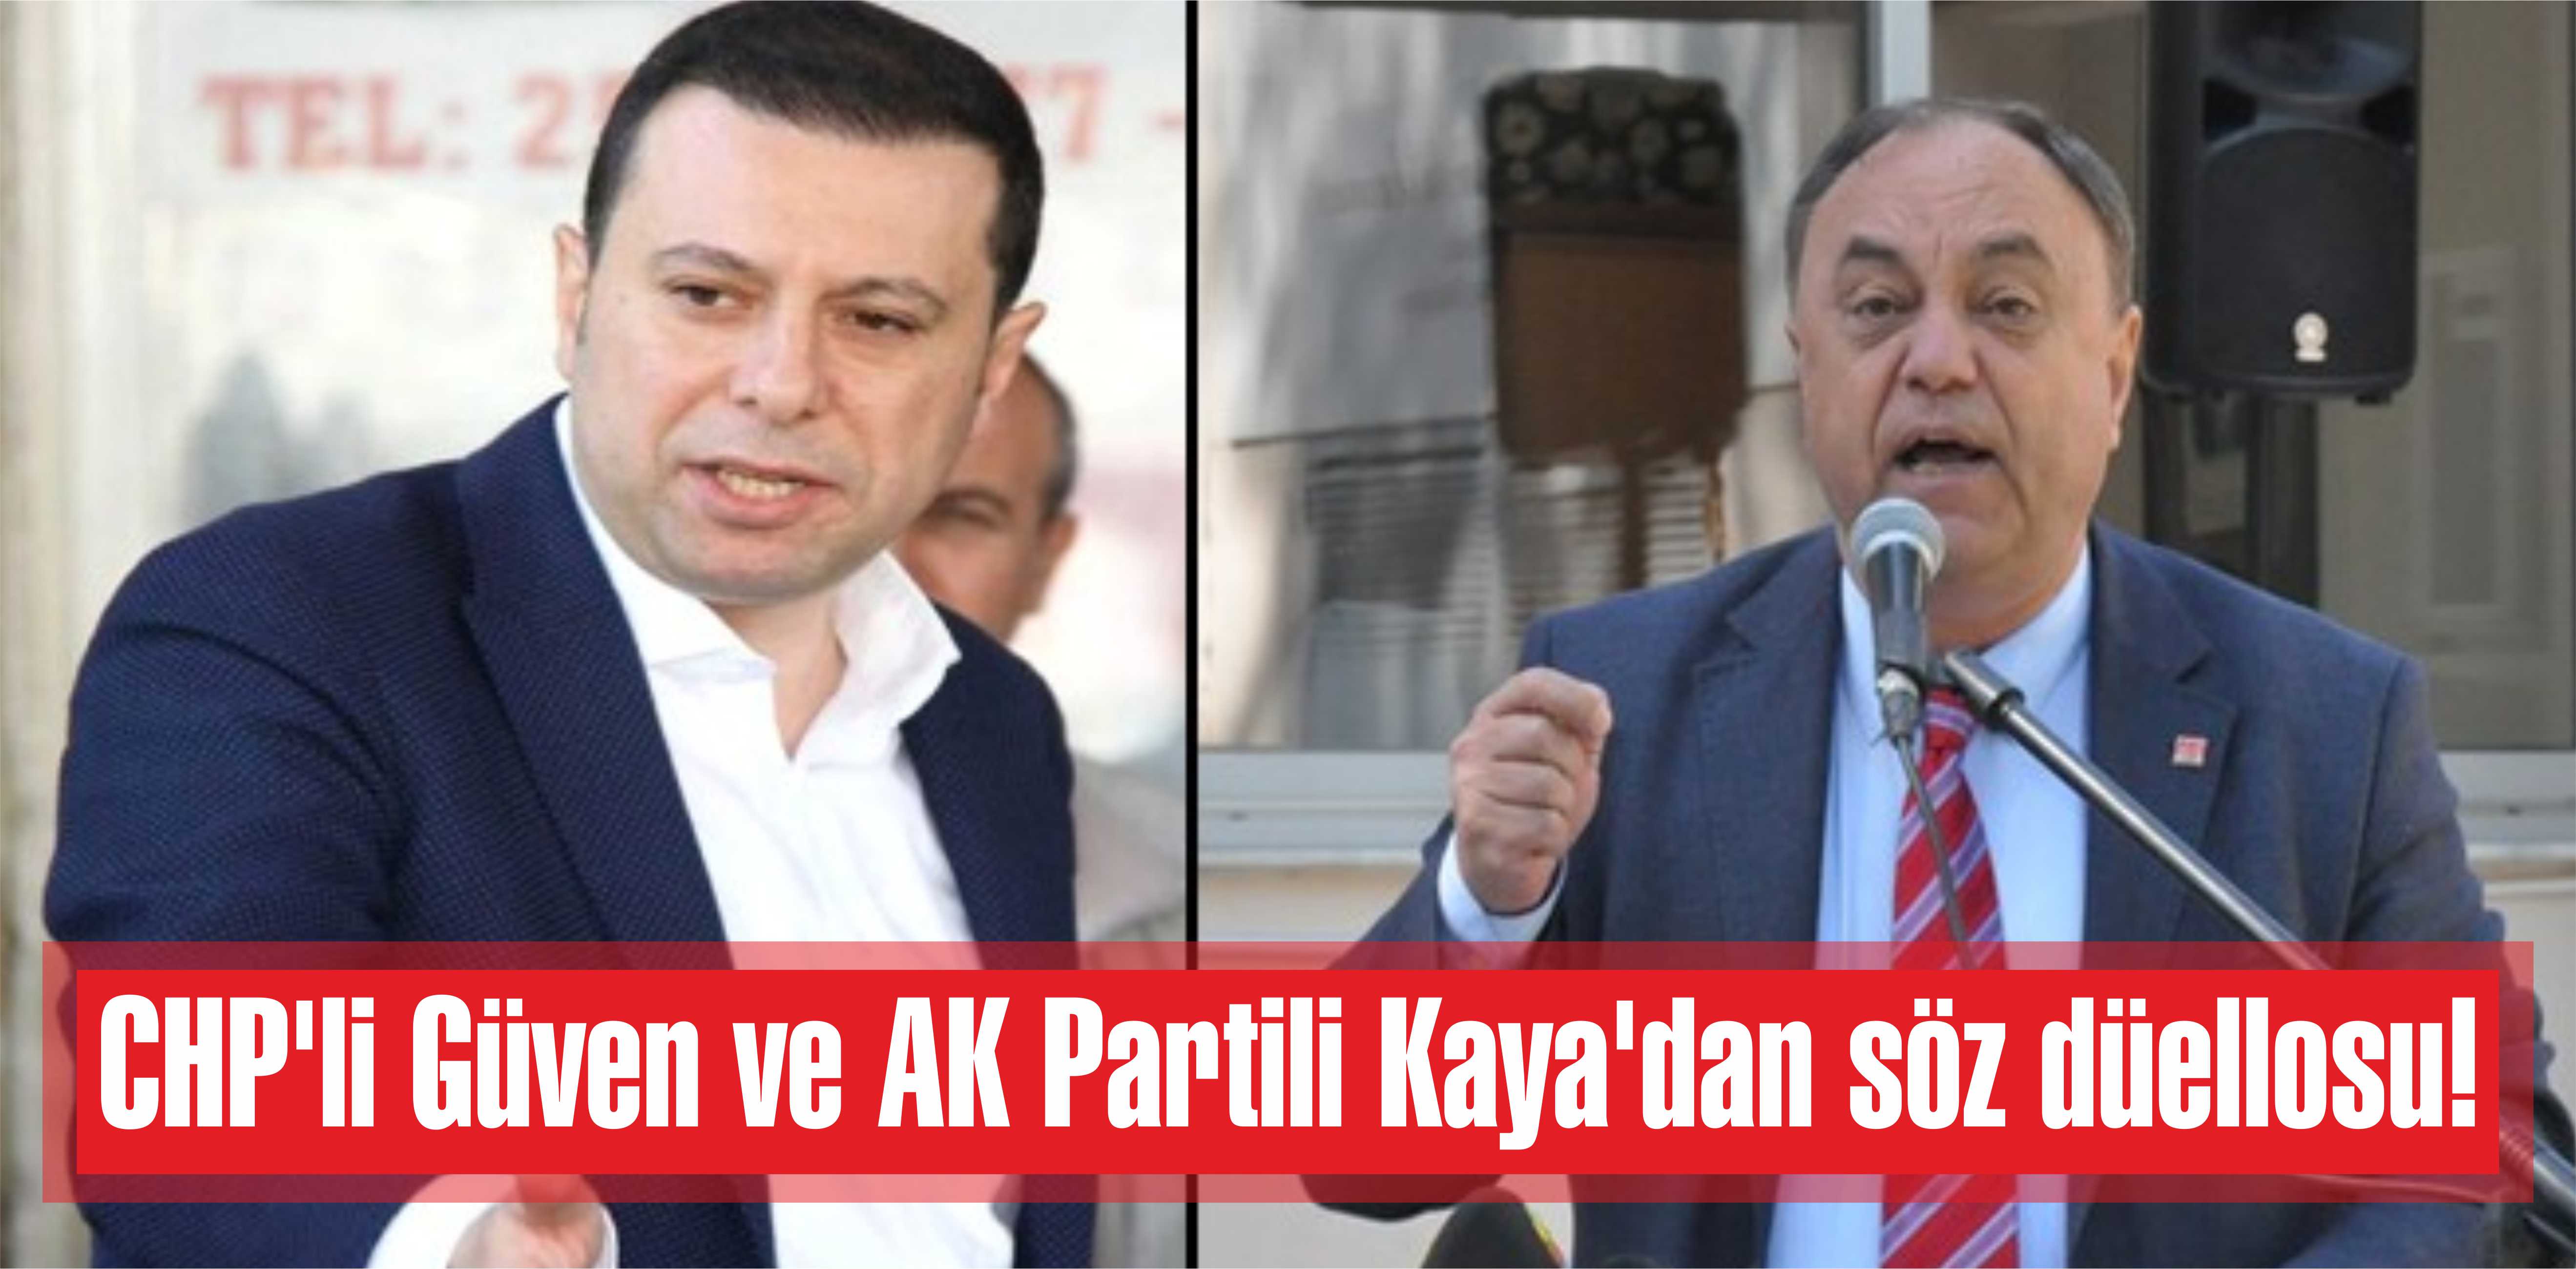 CHP’li Güven ve AK Partili Kaya’dan söz düellosu!